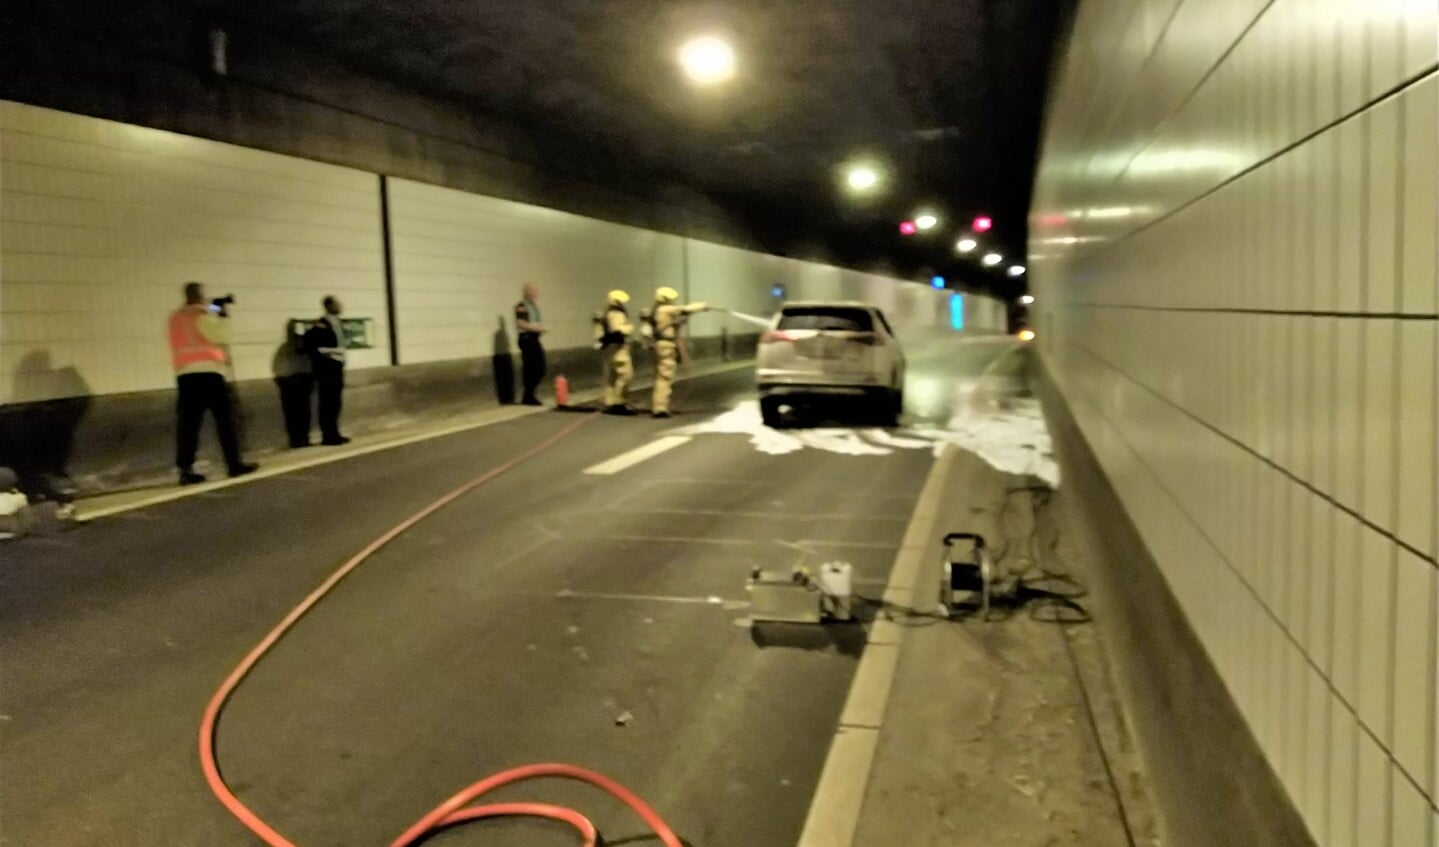 De tweede ploeg bluste de auto via de slanghaspel uit een hulppostkast van de tunnel. Het bleek te gaan om een hybride voertuig (foto: Rjikswaterstaat).